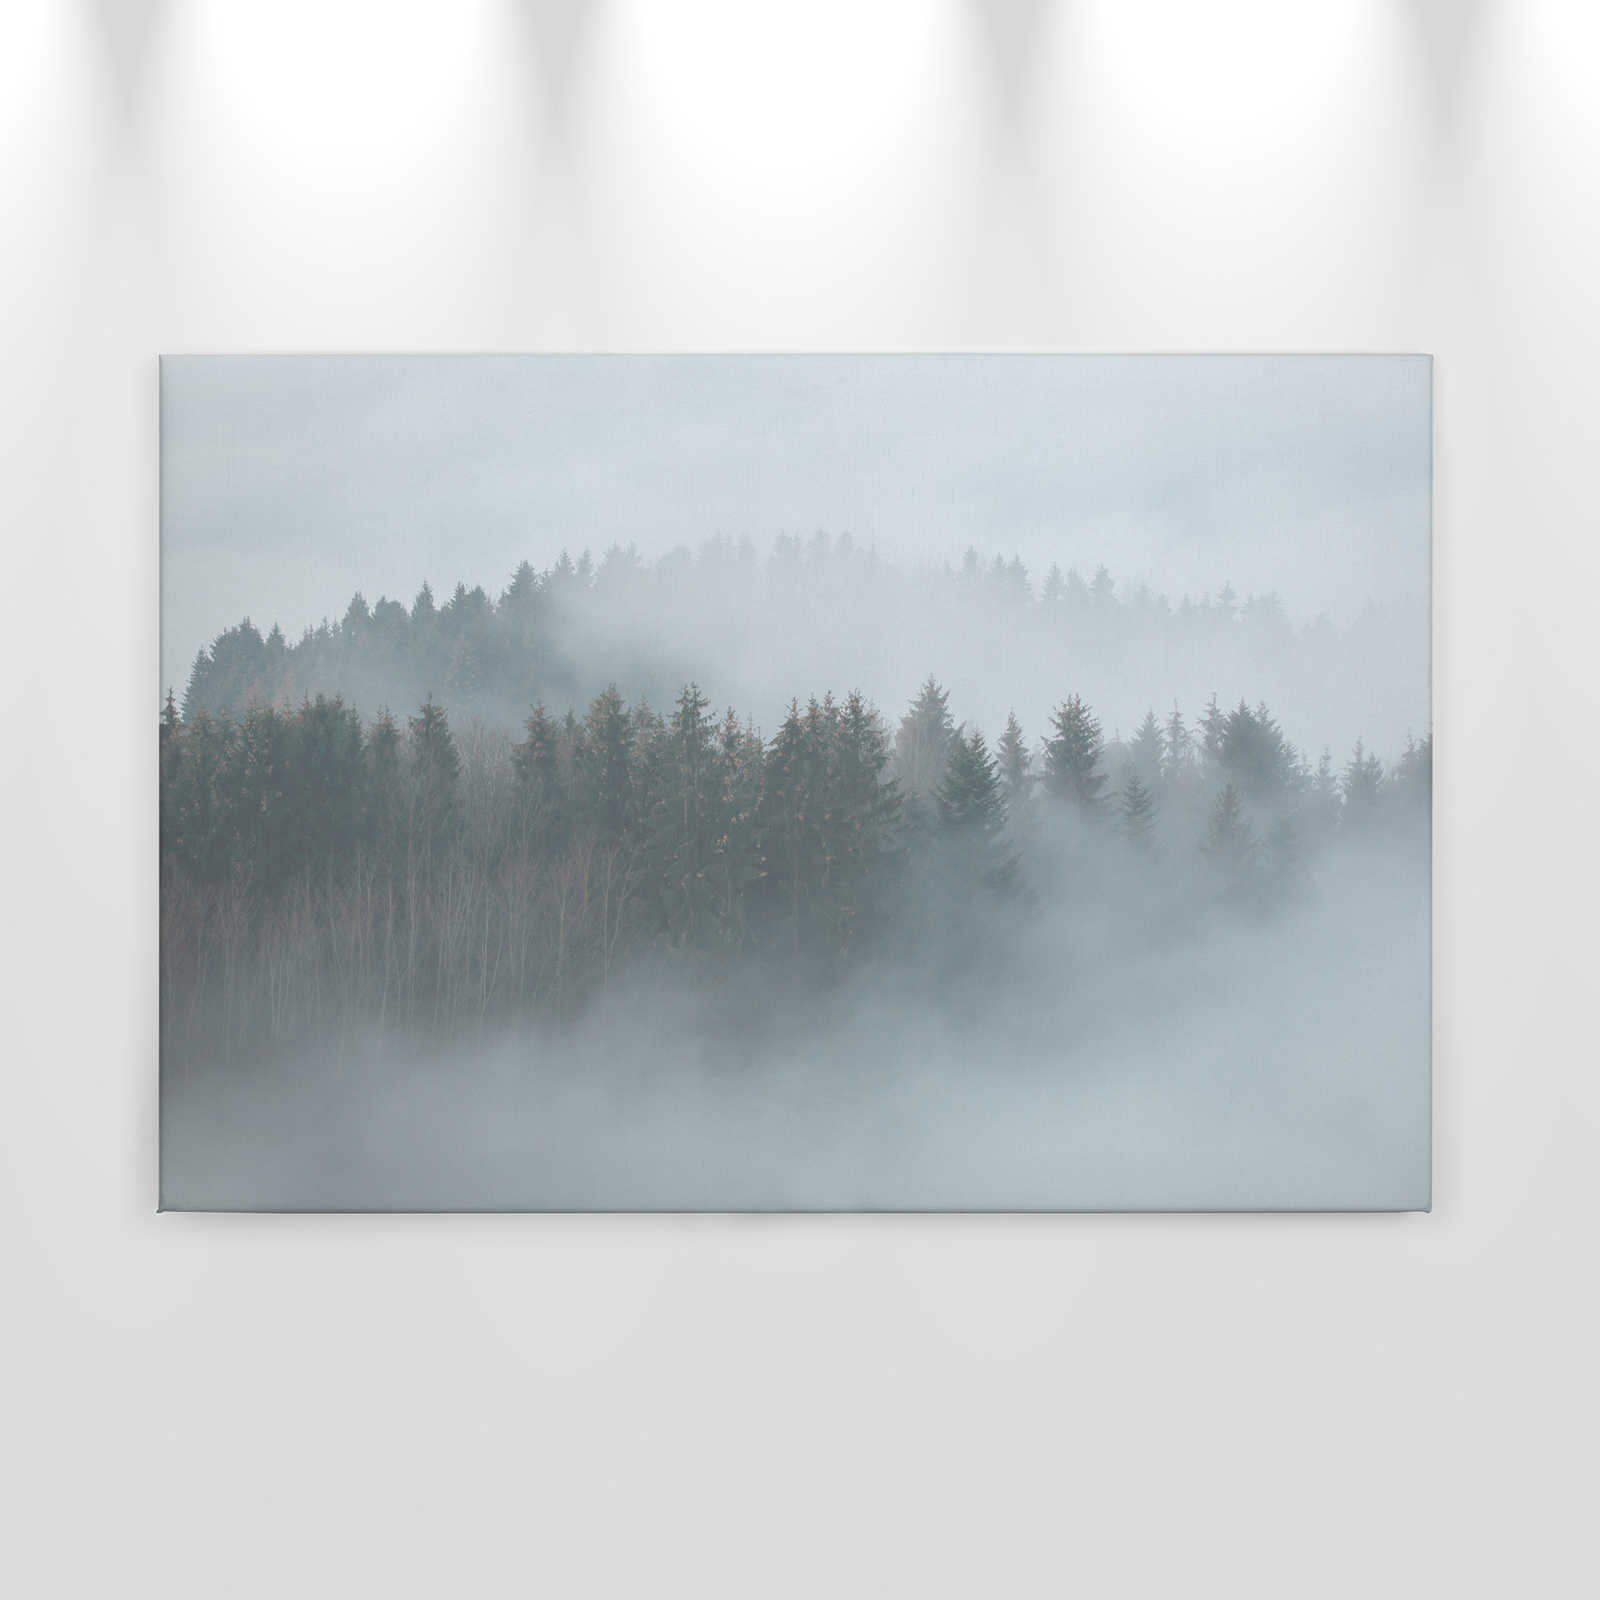             Lienzo con bosque misterioso en la niebla - 0,90 m x 0,60 m
        